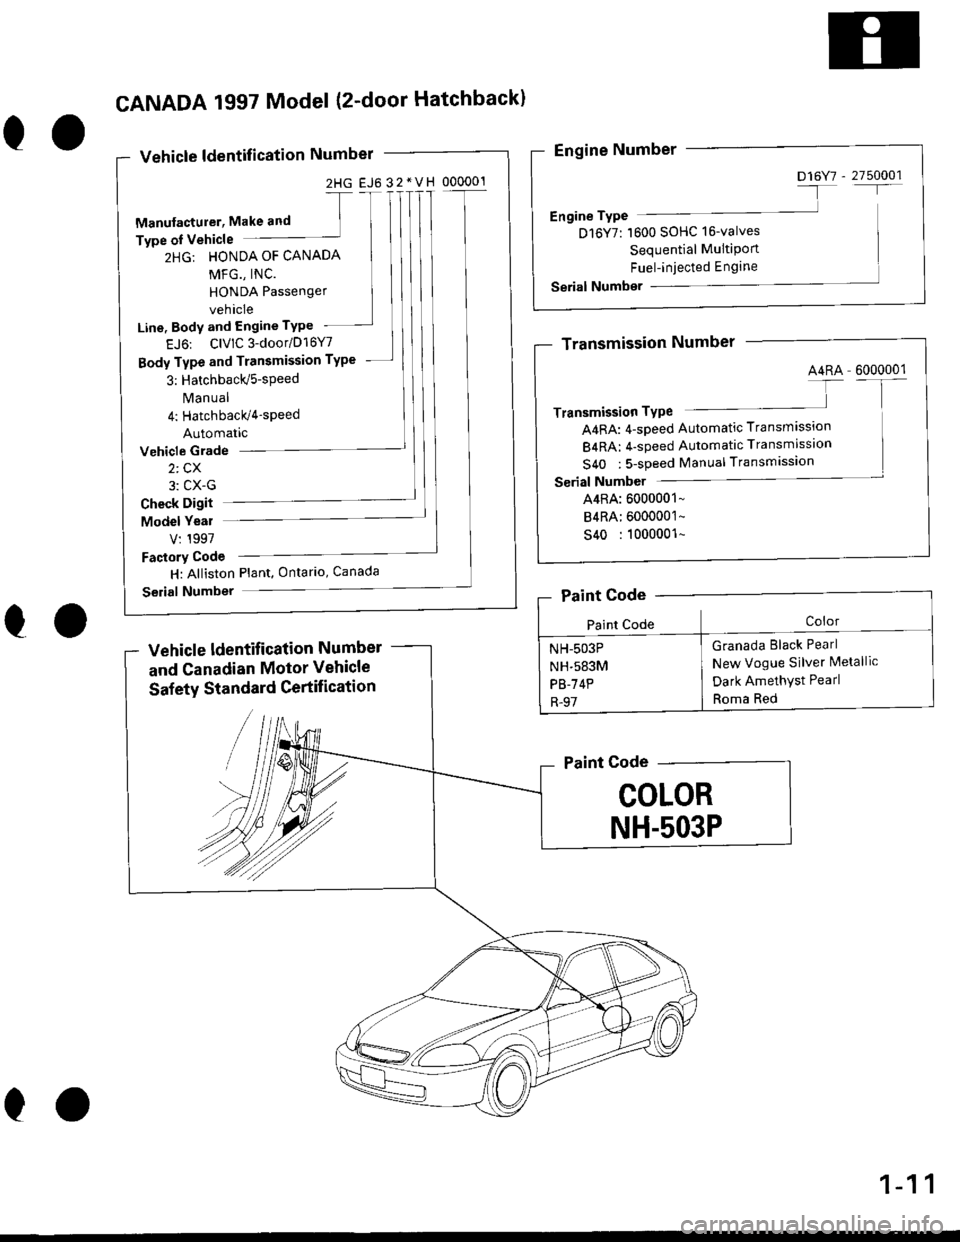 HONDA CIVIC 1997 6.G Workshop Manual 2HG EJ6 32*VH 000001
eo
CANADA 1997 Model (2-door Hatchbackl
Vehicle ldentification Number
-[
Manufacturer, Make and ]Type oI Vehicle
2HG: HONDA OF CANADA
MFG., INC.
HONDA Passenger
vehicle
Line, Body